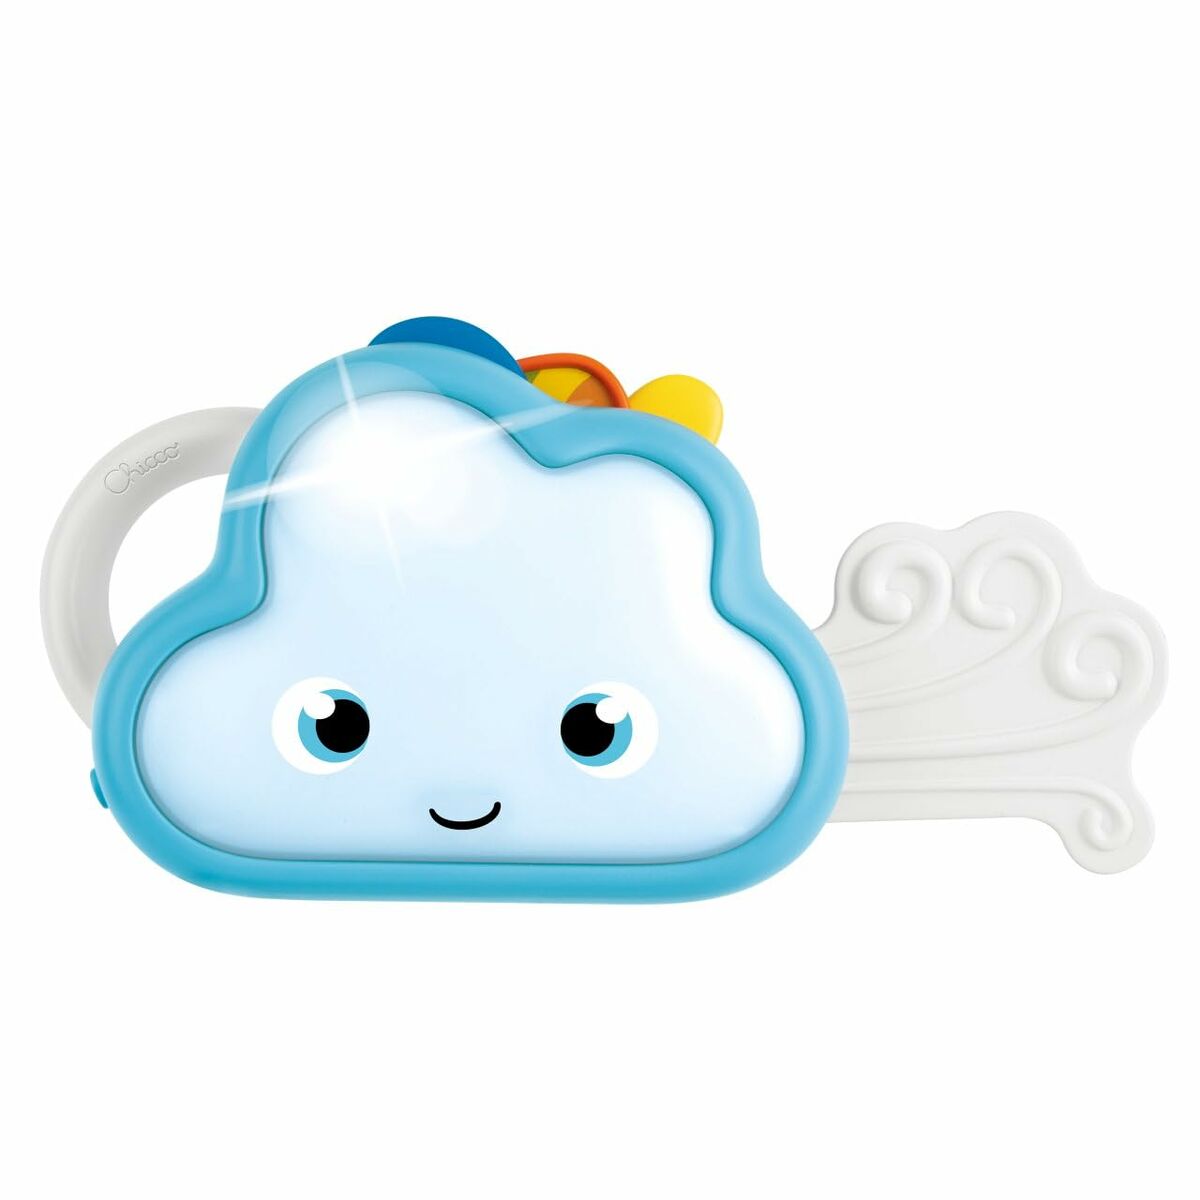 Interaktiv leksak för småbarn Chicco Weathy The Cloud 17 x 6 x 13 cm-Bebis, Leksaker för småbarn-Chicco-peaceofhome.se